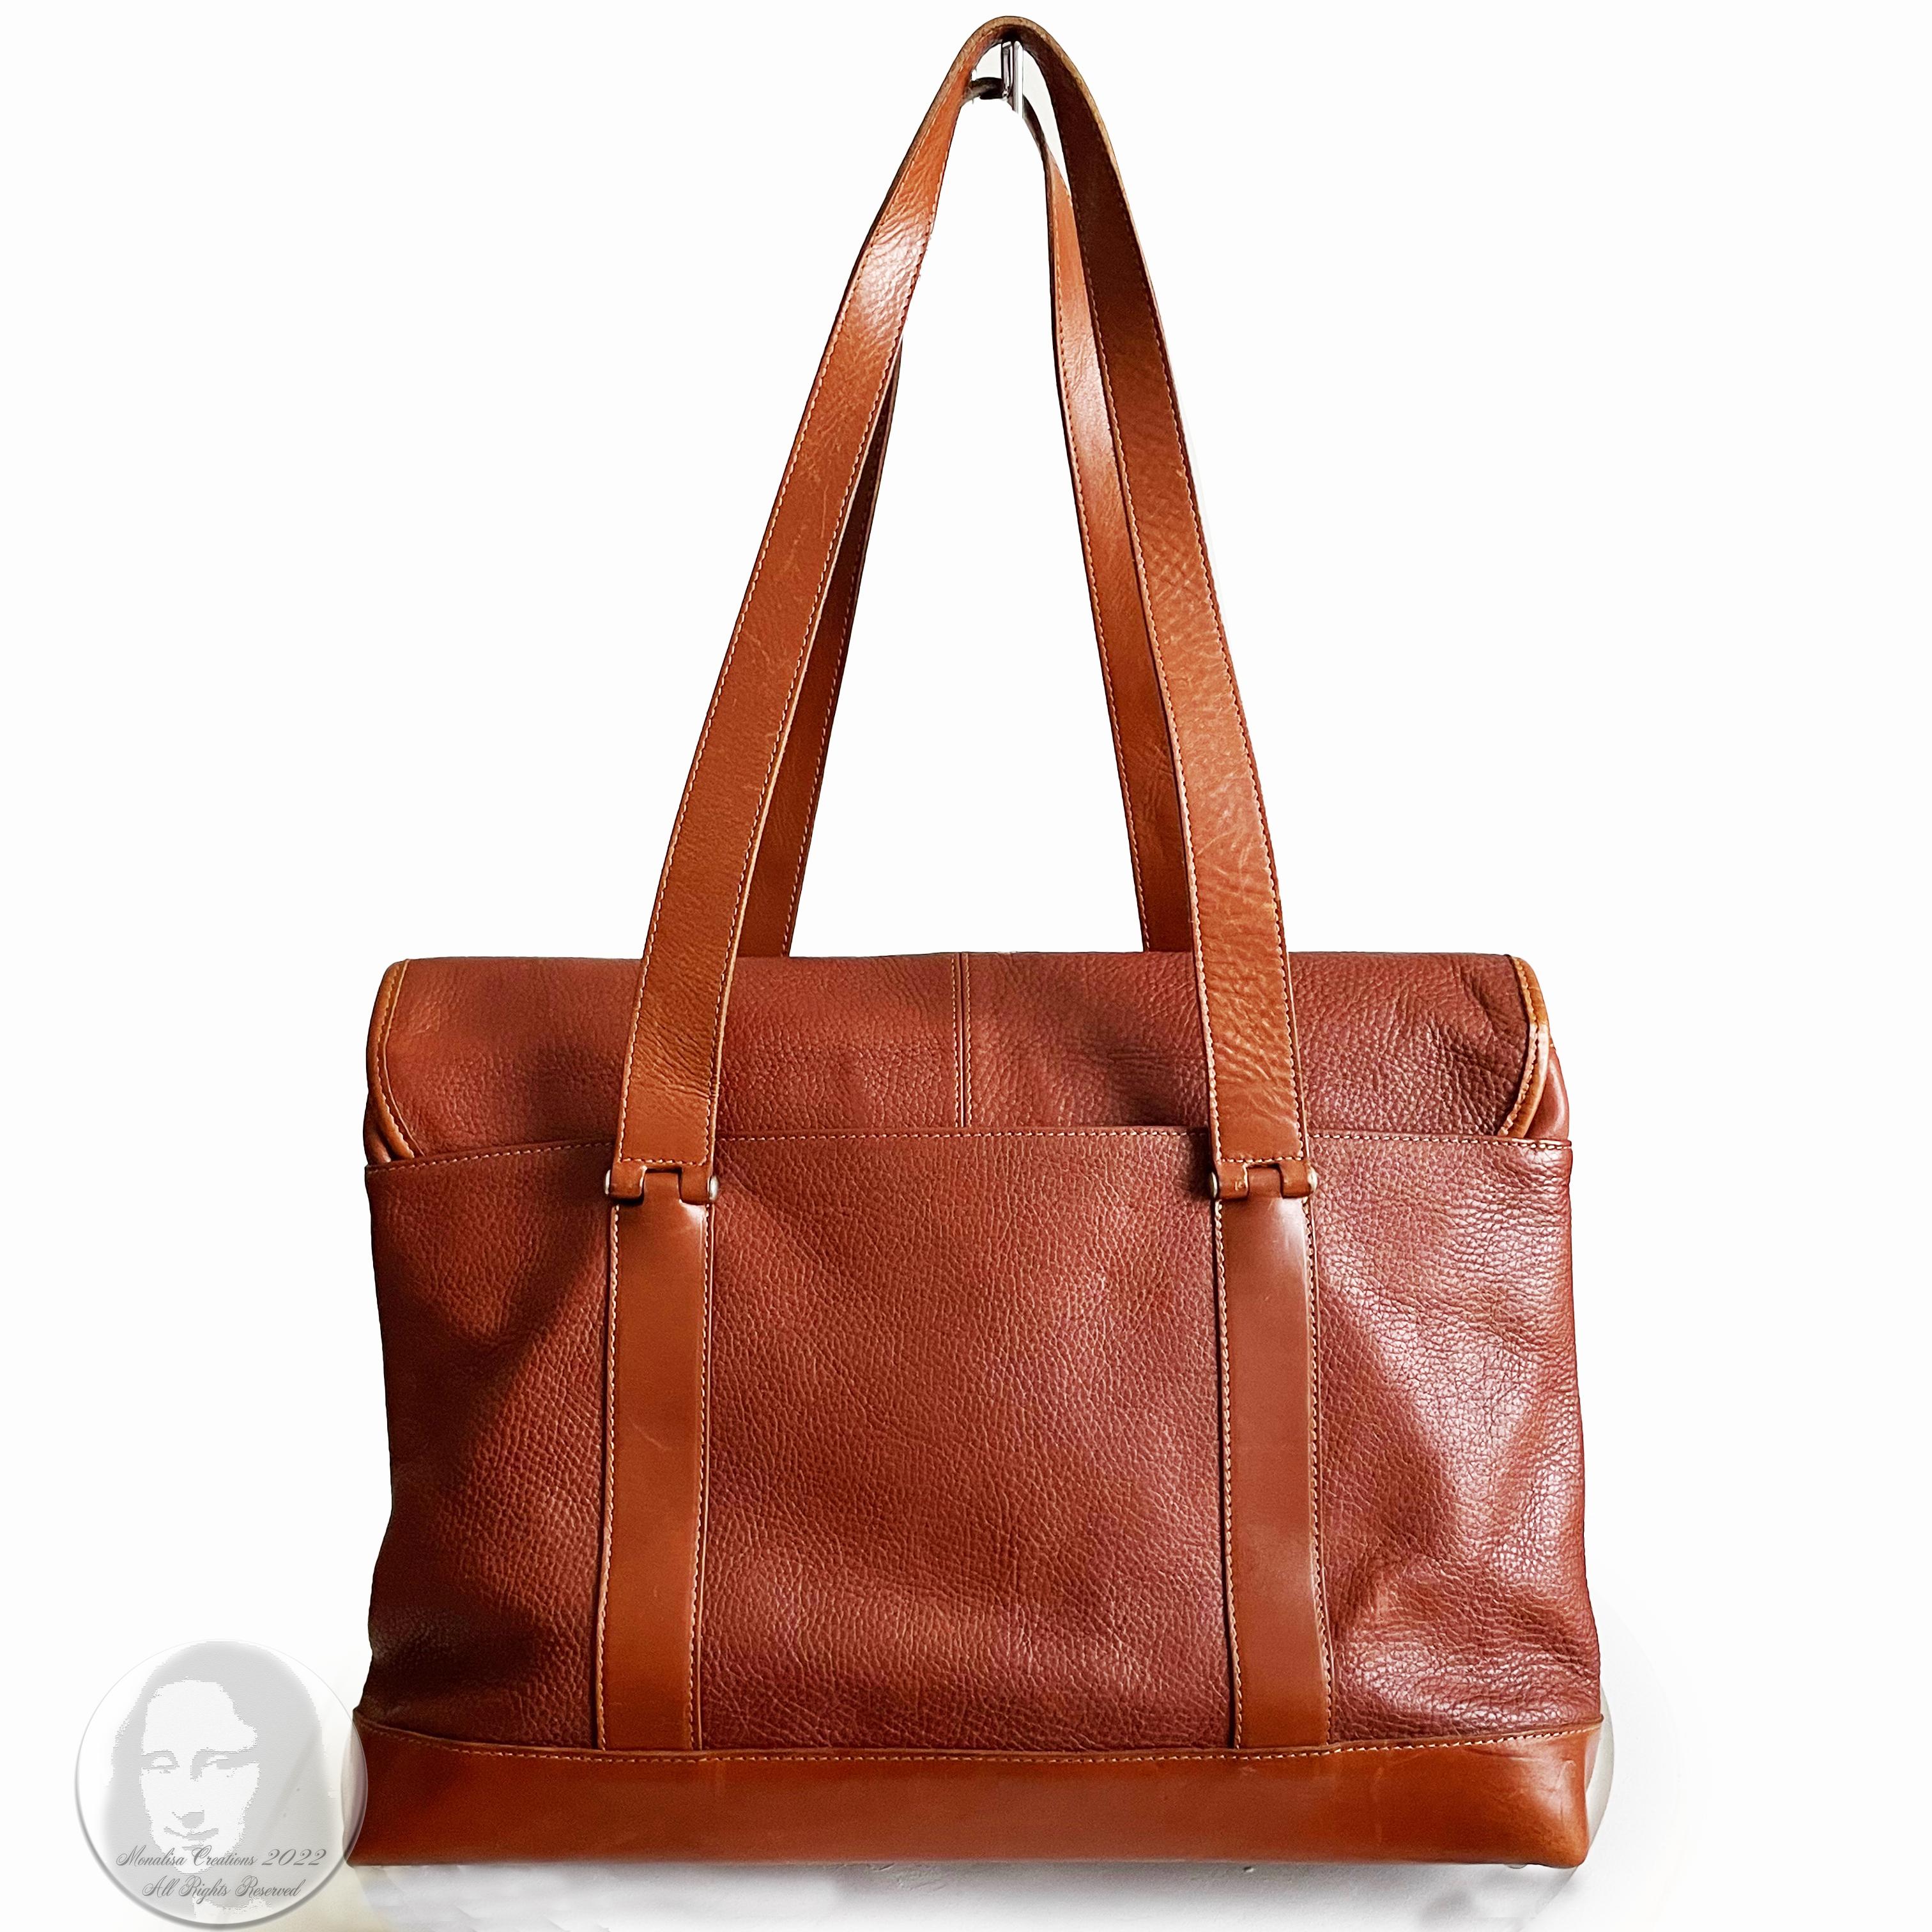 Hartmann Business Bag Briefcase Computer or Shoulder Bag British Tan Leather 4